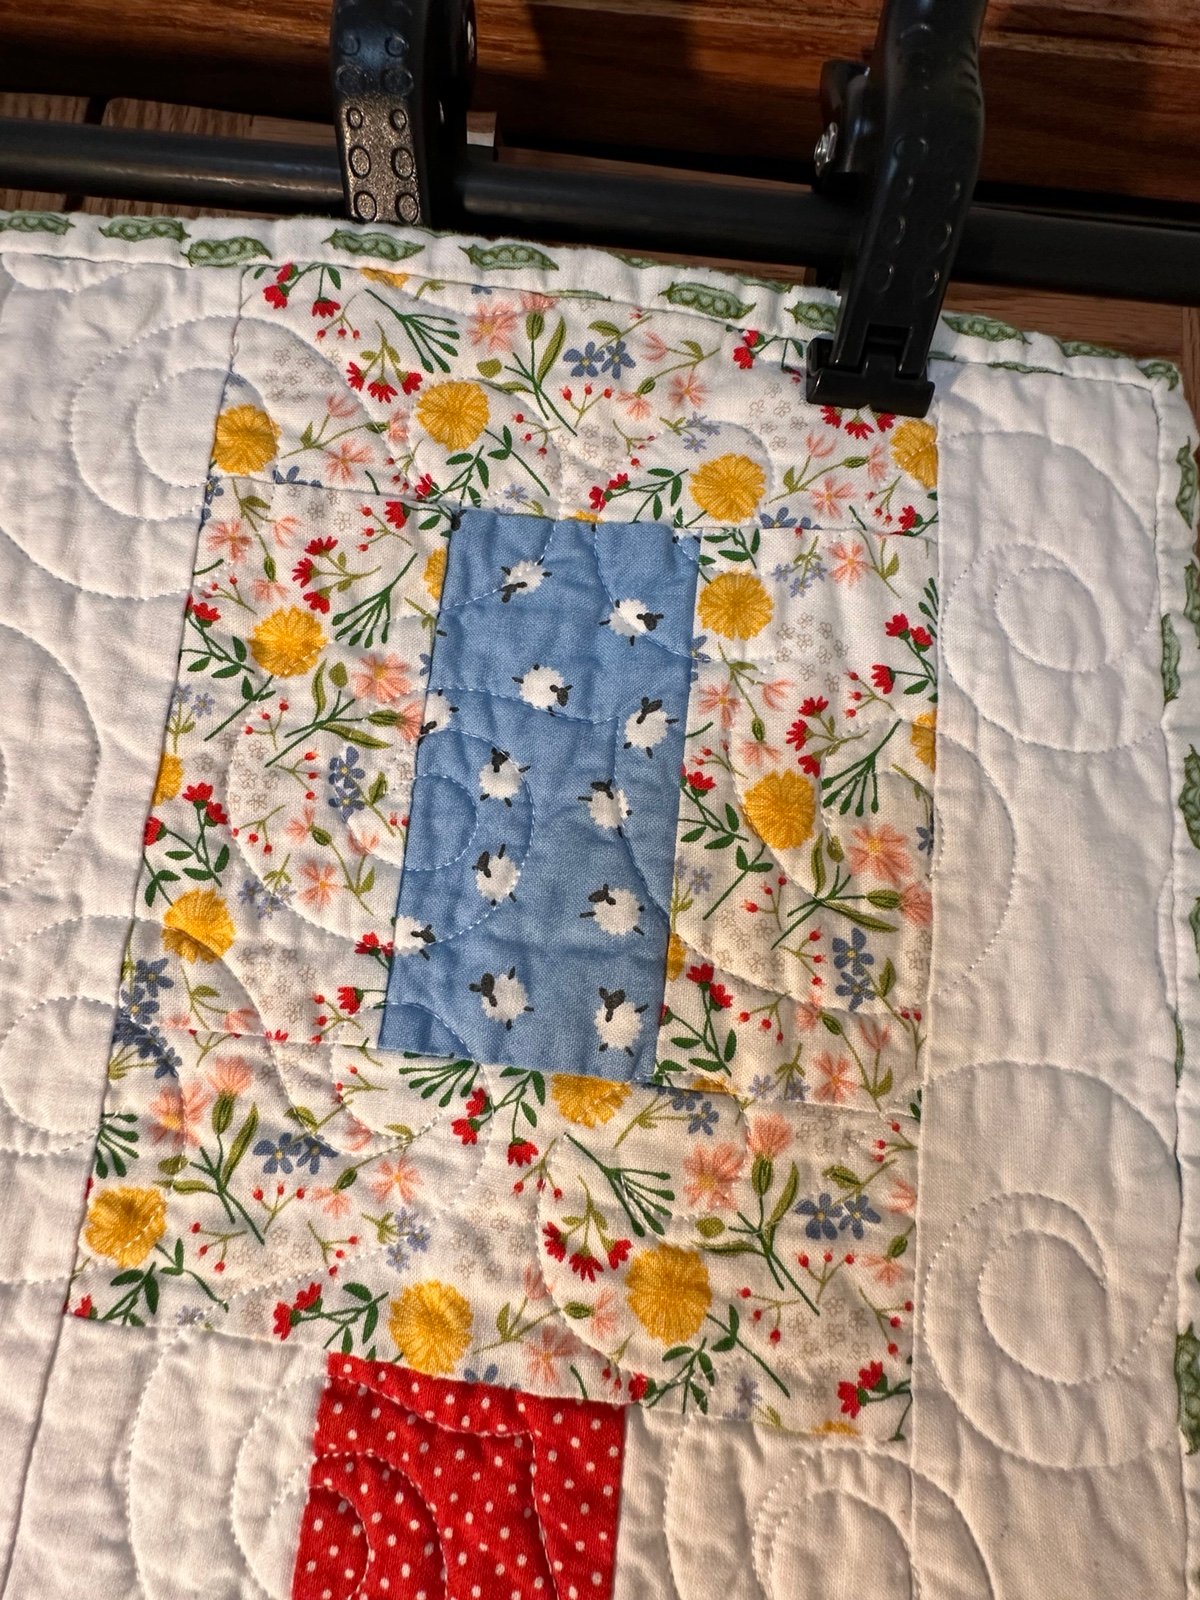 Handmade quilt - new d2Q5bBaiE